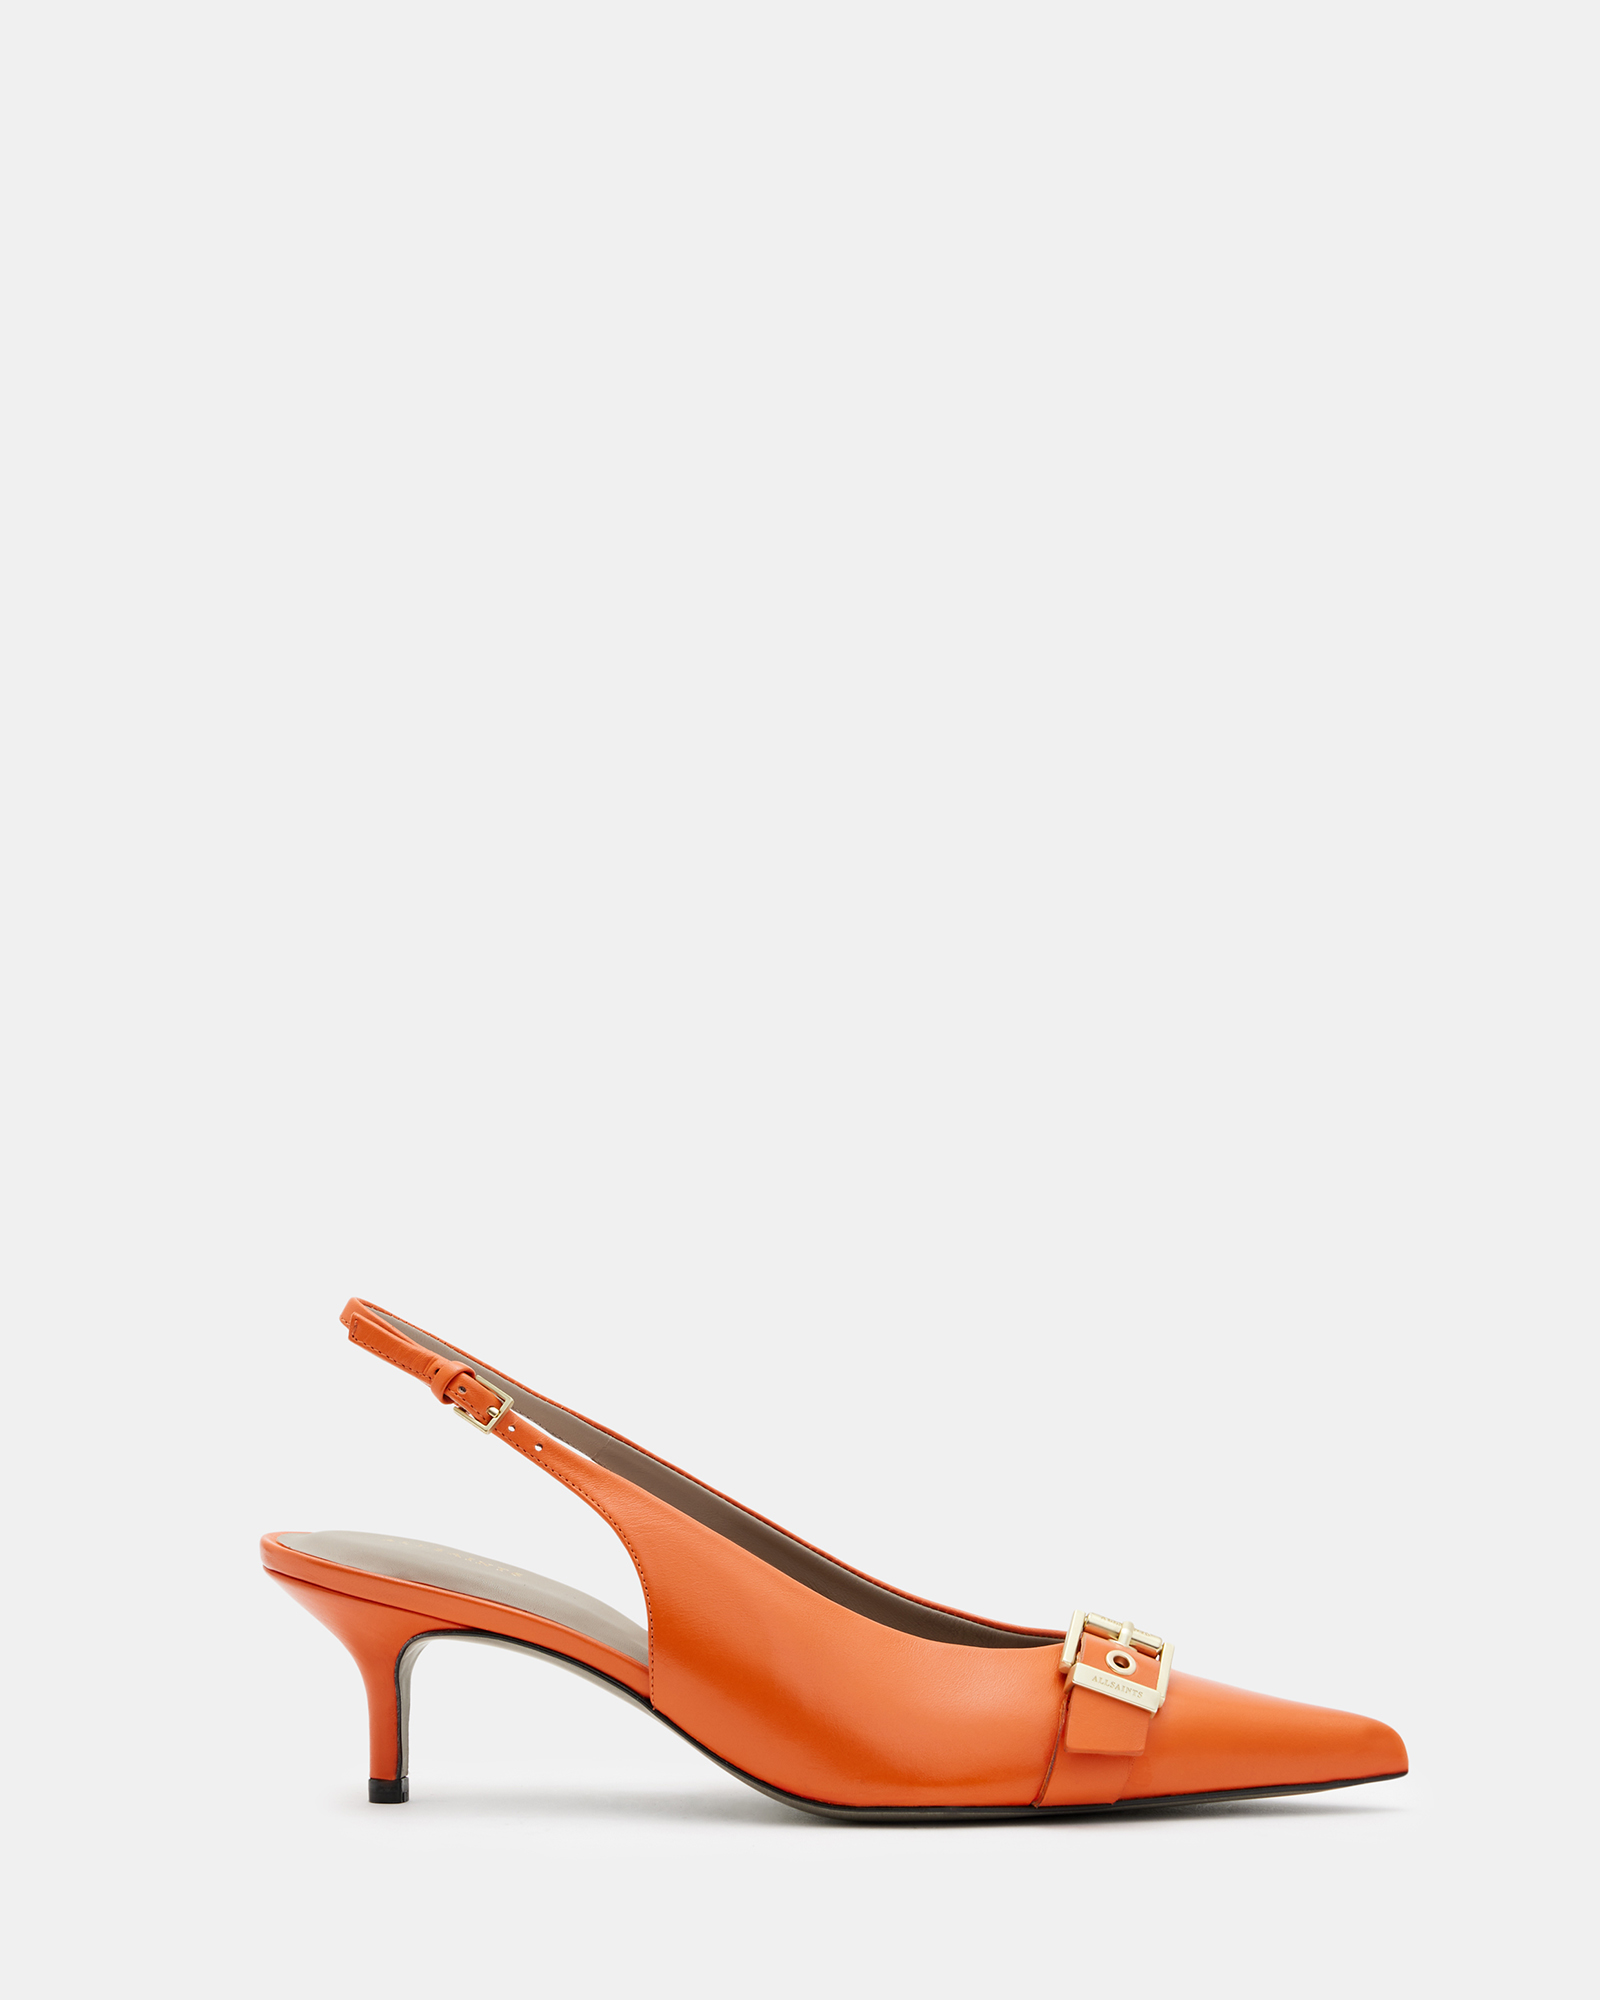 AllSaints Selina Slingback Leather Kitten Heels,, Zesty Orange